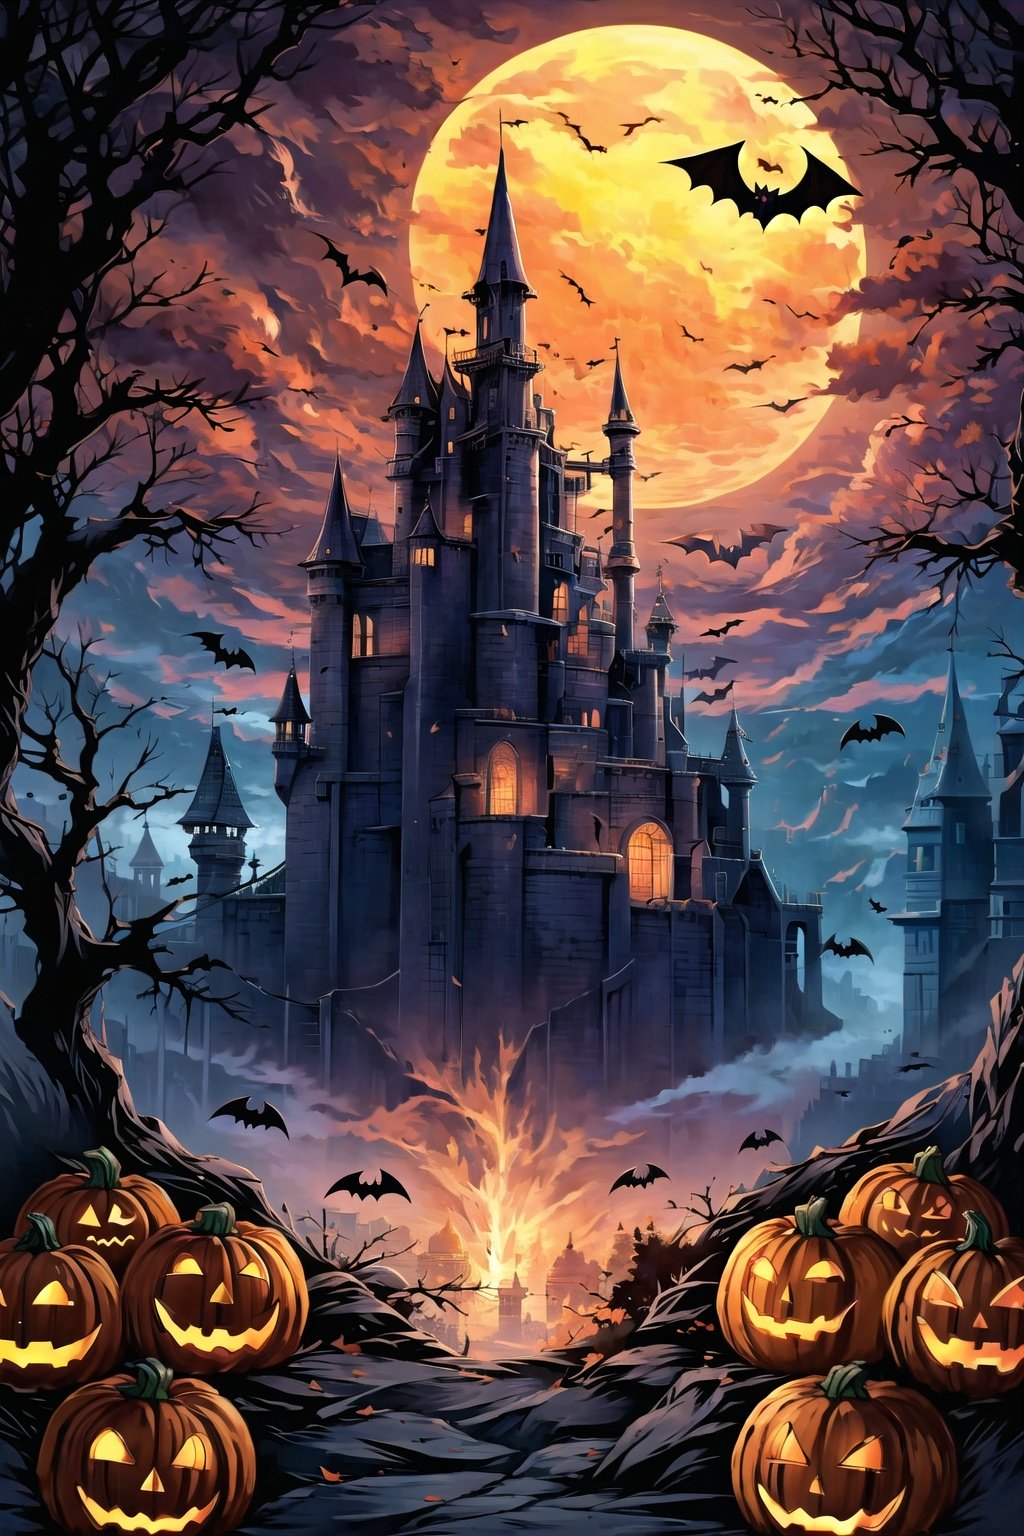 evening,candle,embers,halloween,pumpkin,bat,castle,Pumpkin lanterns hanging from trees